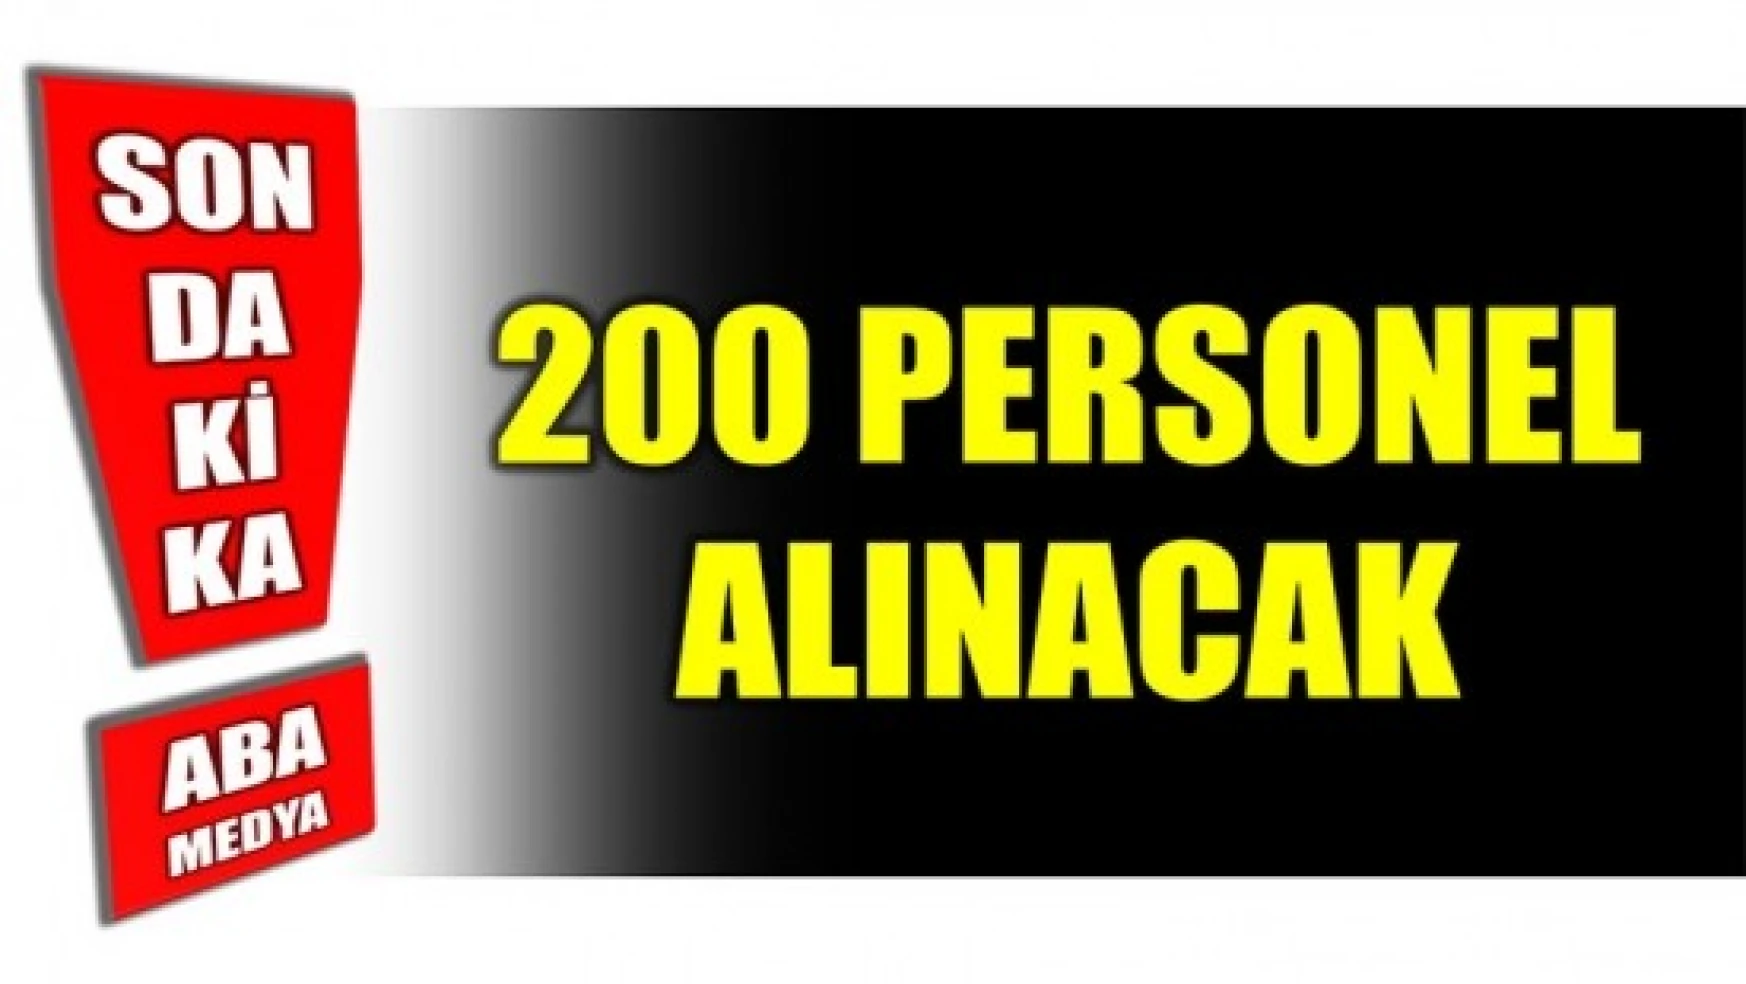 200 PERSONEL ALINACAK